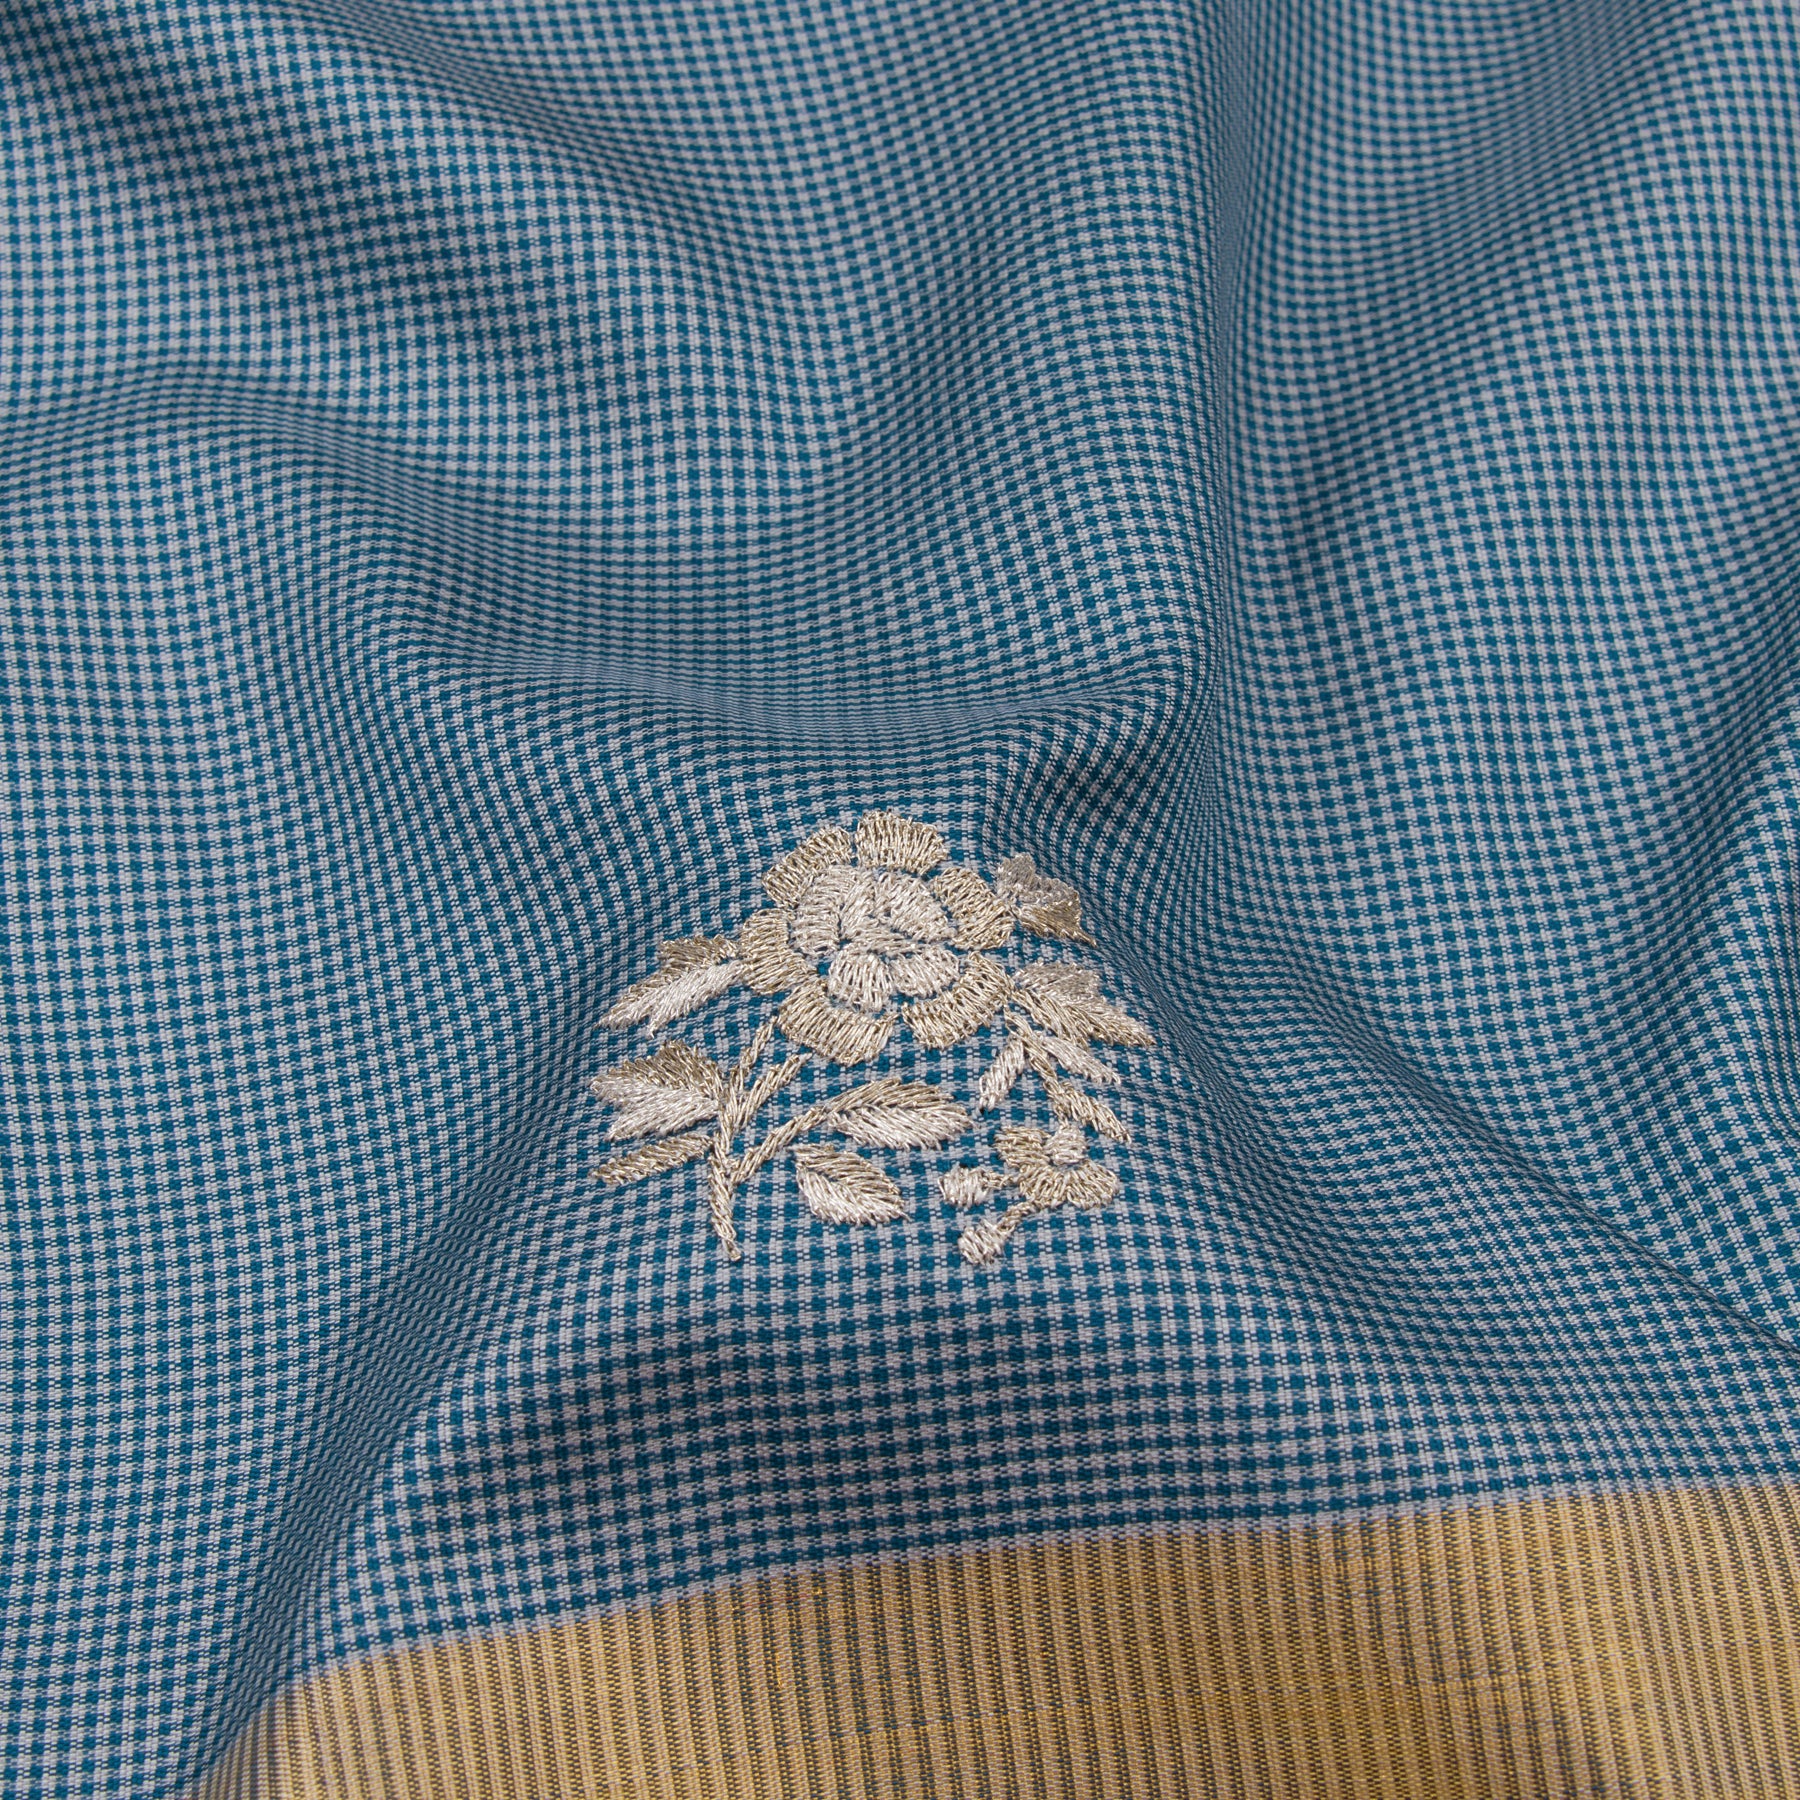 Kanakavalli X Ashdeen Kanjivaram Silk Sari 19-050-HS001-01908 - Fabric View